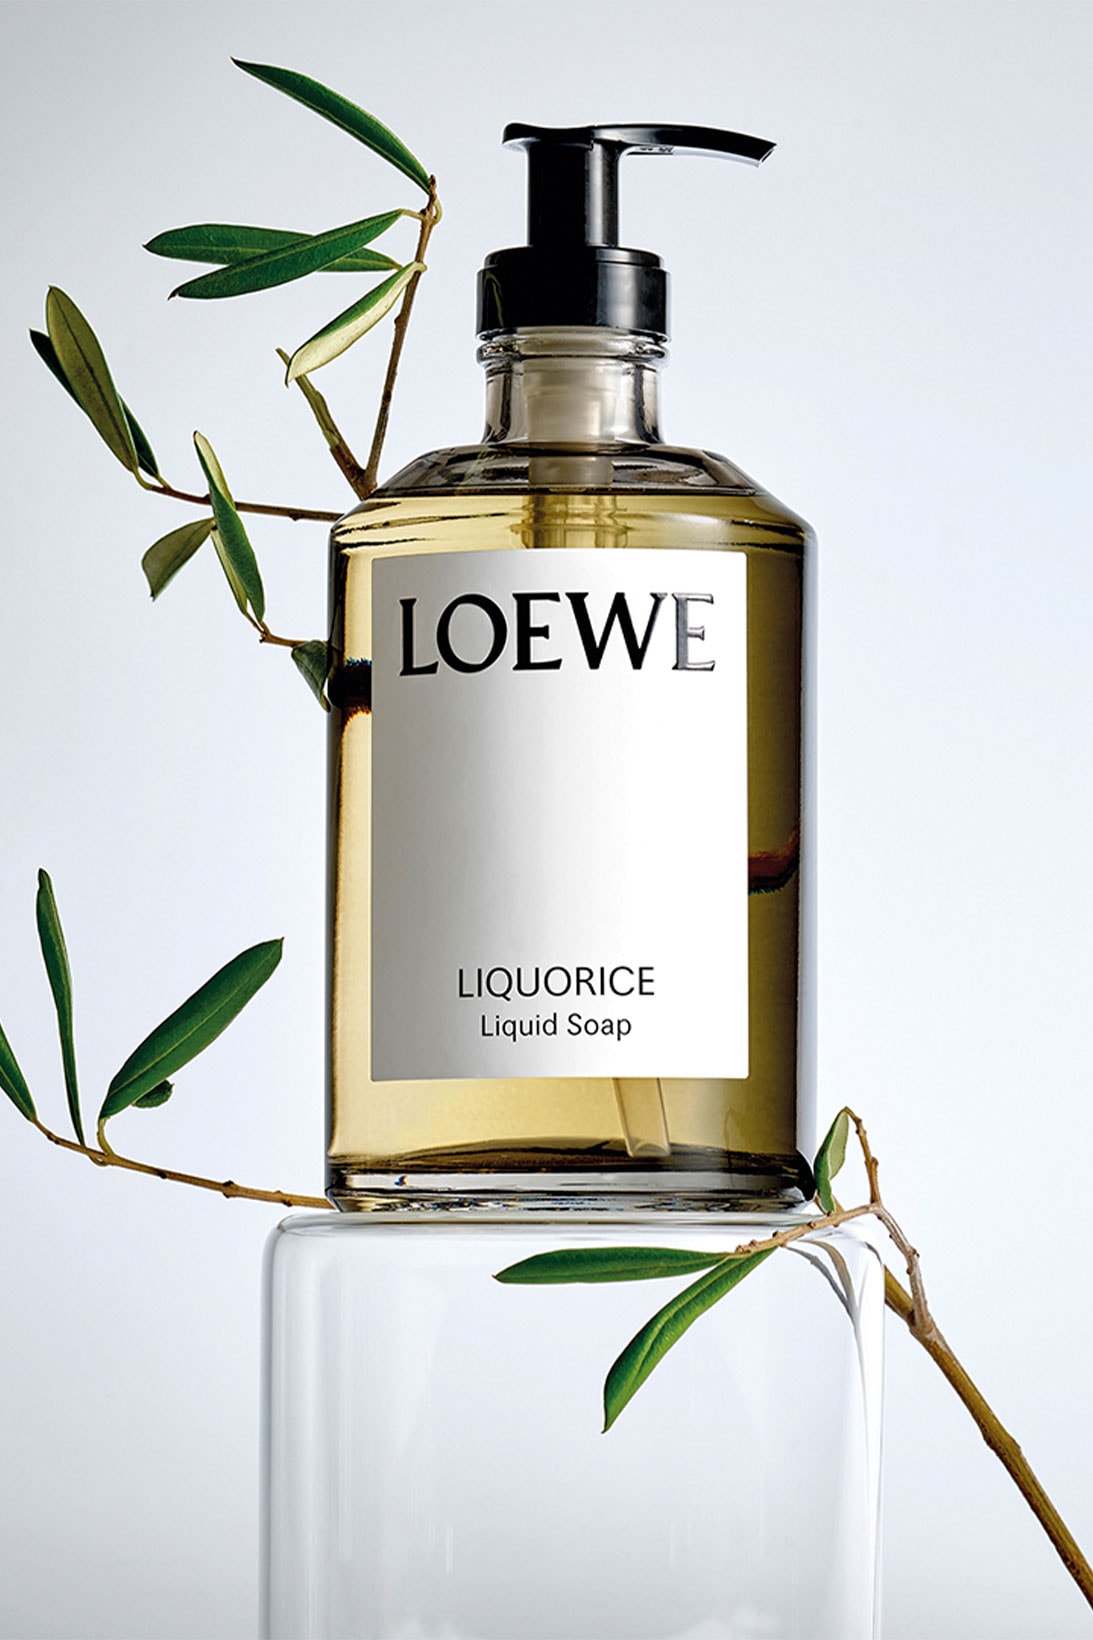 Loewe liquid soap Liquorice scent